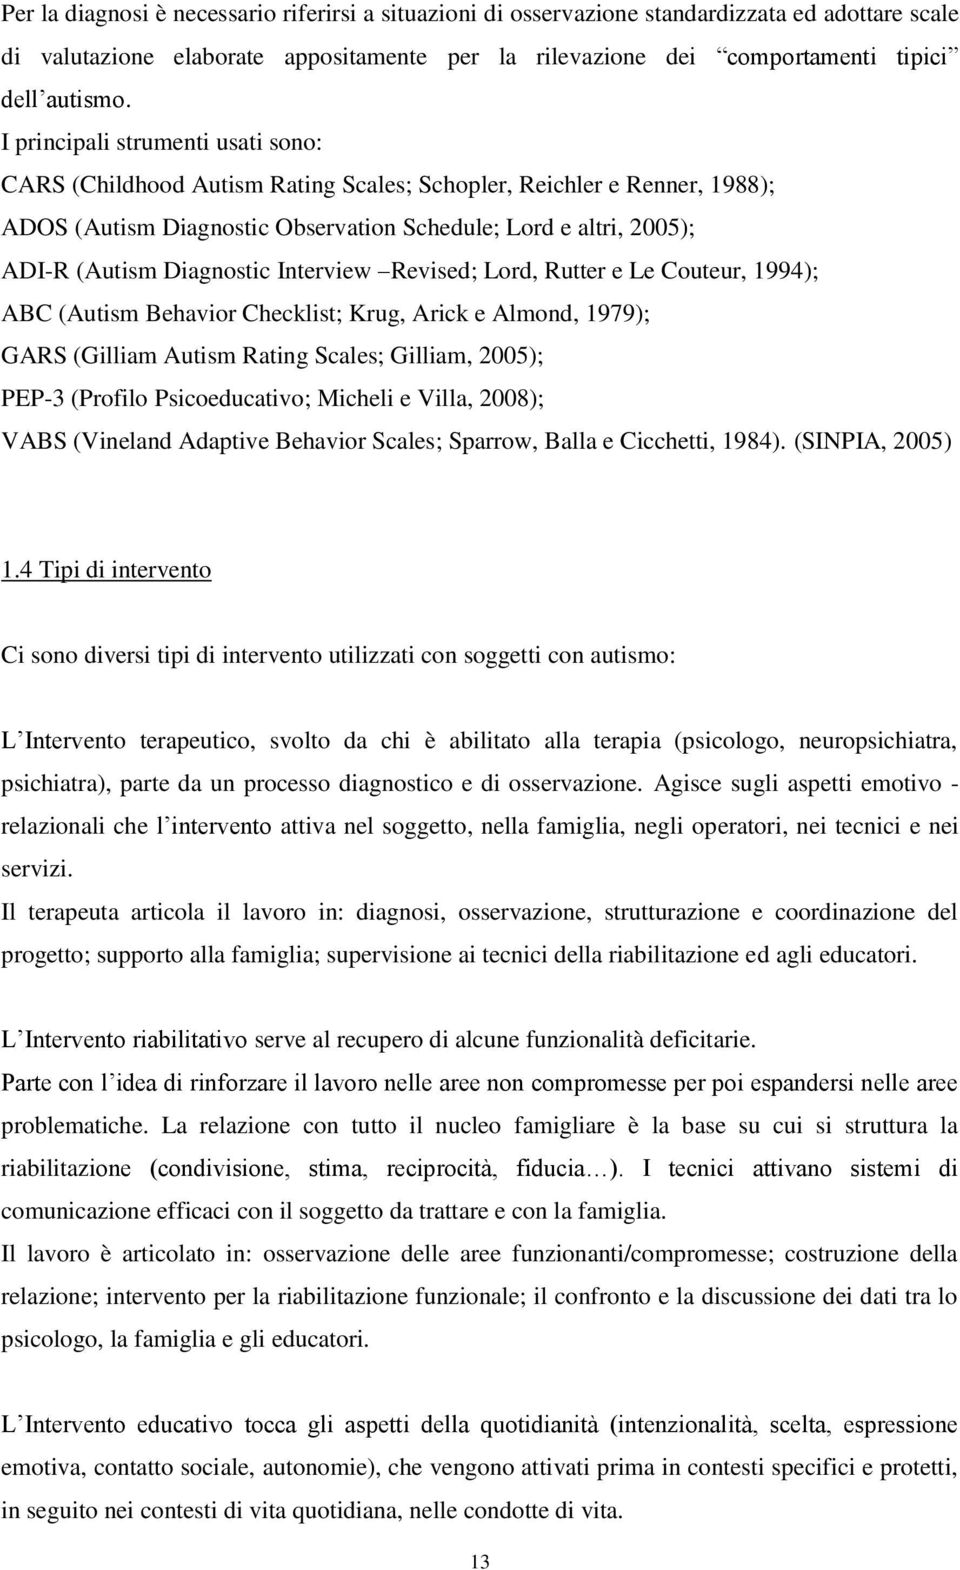 Diagnostic Interview Revised; Lord, Rutter e Le Couteur, 1994); ABC (Autism Behavior Checklist; Krug, Arick e Almond, 1979); GARS (Gilliam Autism Rating Scales; Gilliam, 2005); PEP-3 (Profilo